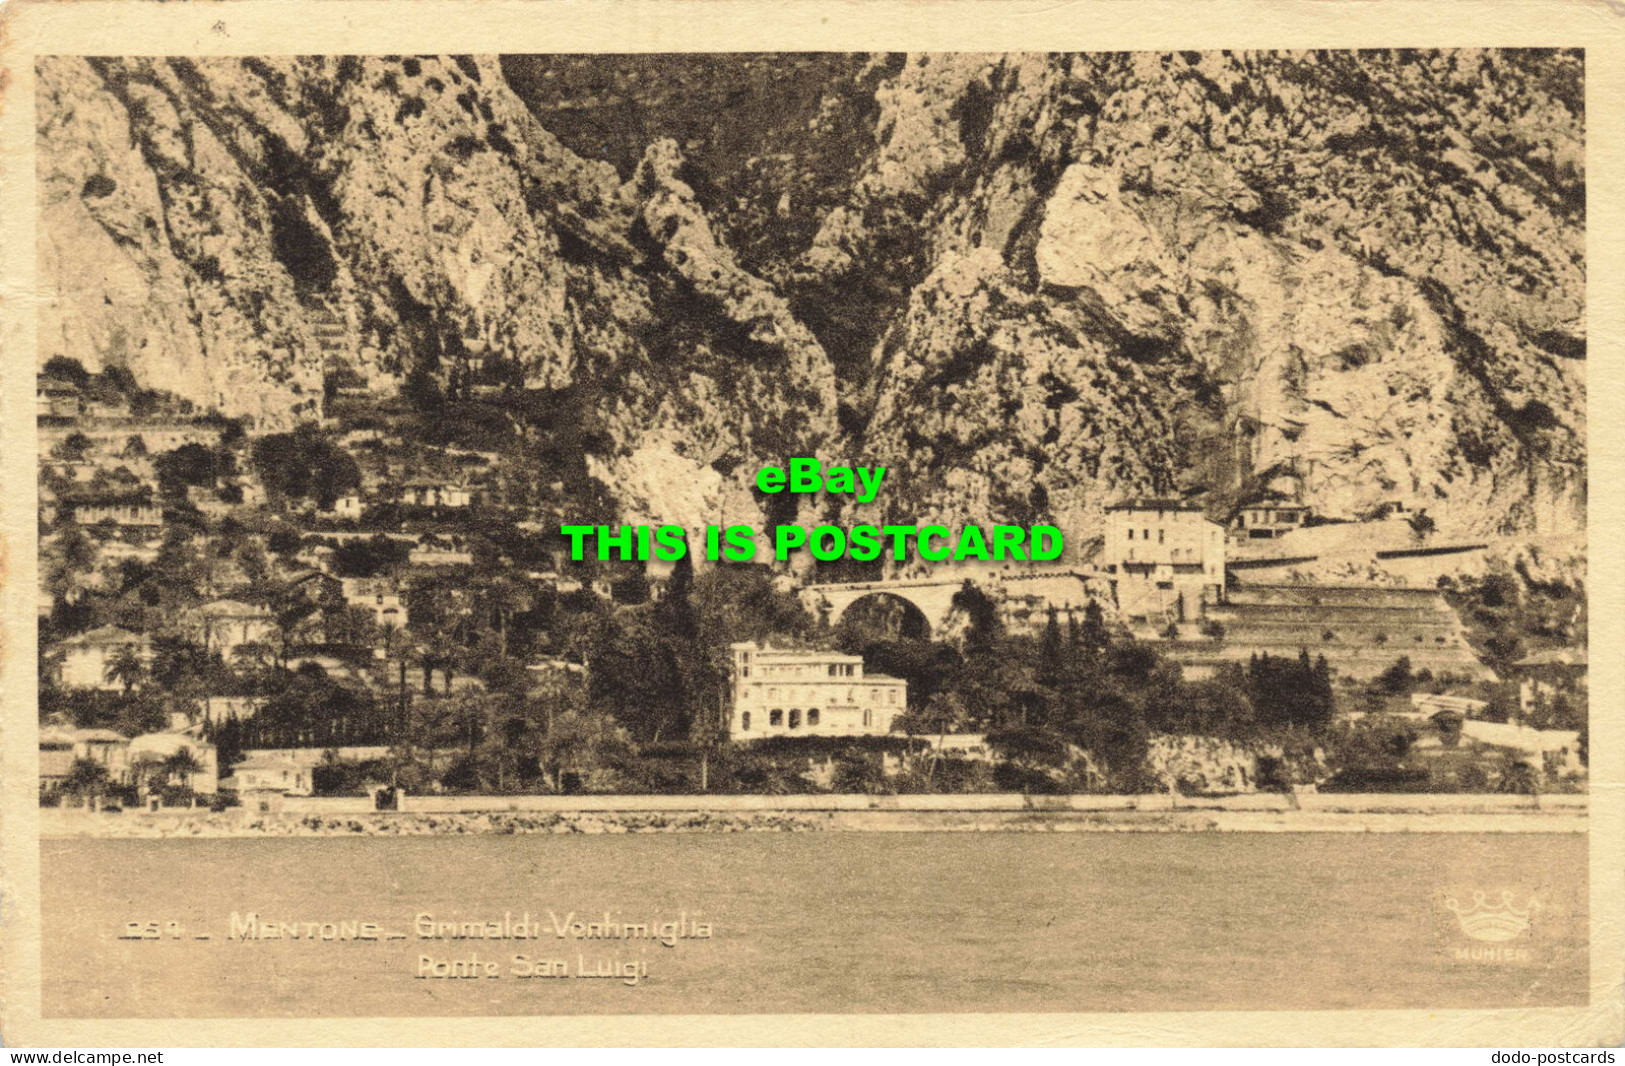 R566019 254. Mentone. Grimaldi Ventimiglia. Ponte San Luigi. Munier. 1939 - Welt